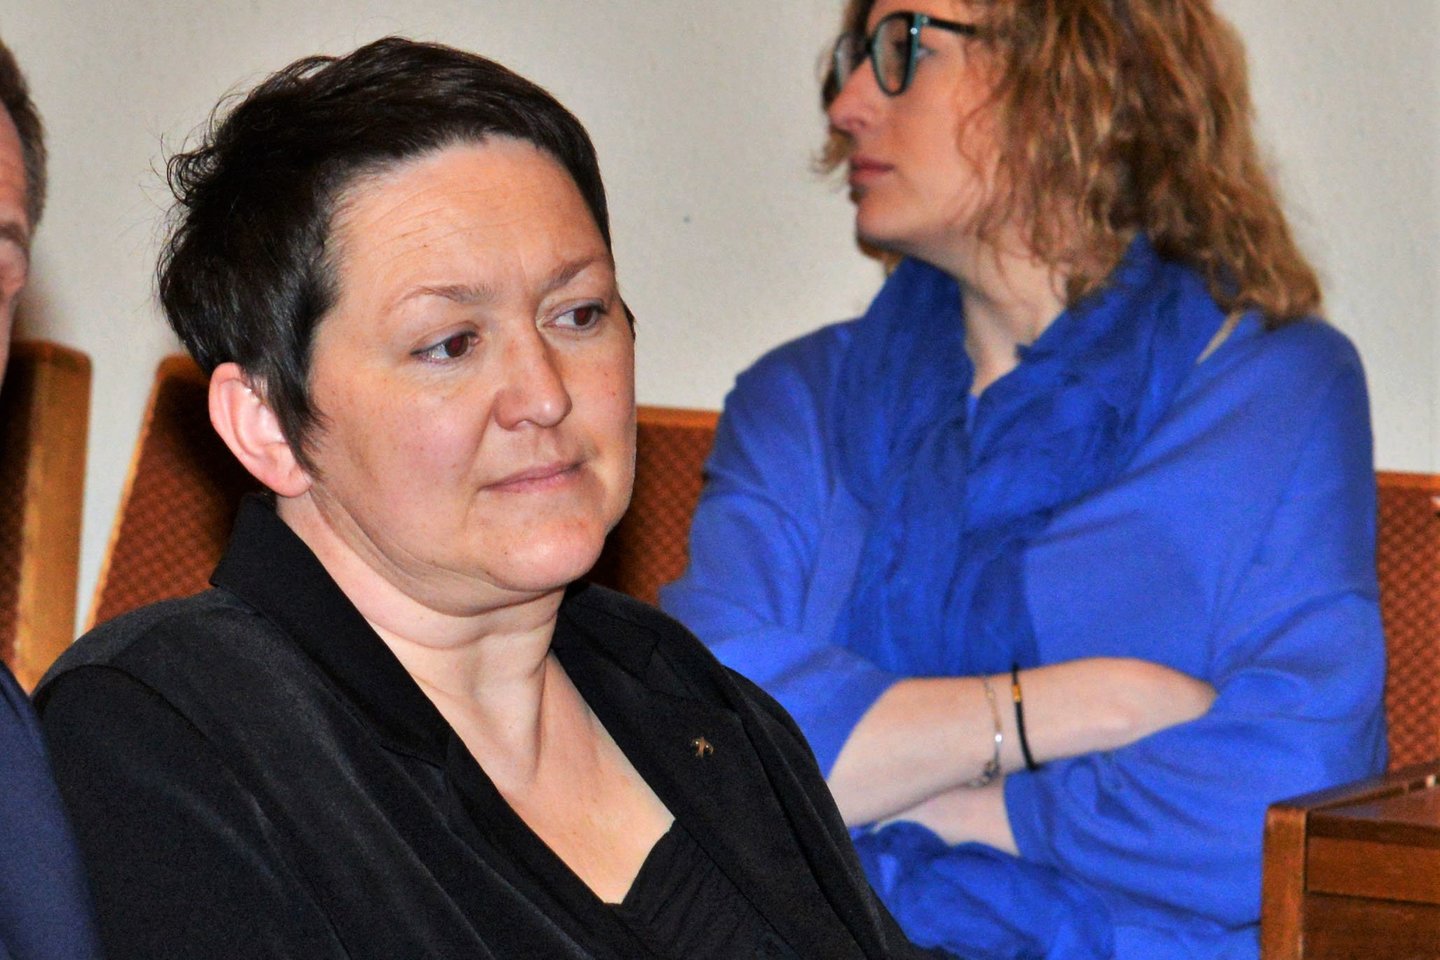  Laiduoti už smurtiniu nusikaltimu apkaltintą A.Vasiliauską sutikusi E.Kižienė per Pakruojo rajono mero rinkimus gavo vos 5 procentus rinkėjų balsų.<br> A.Padoros nuotr.